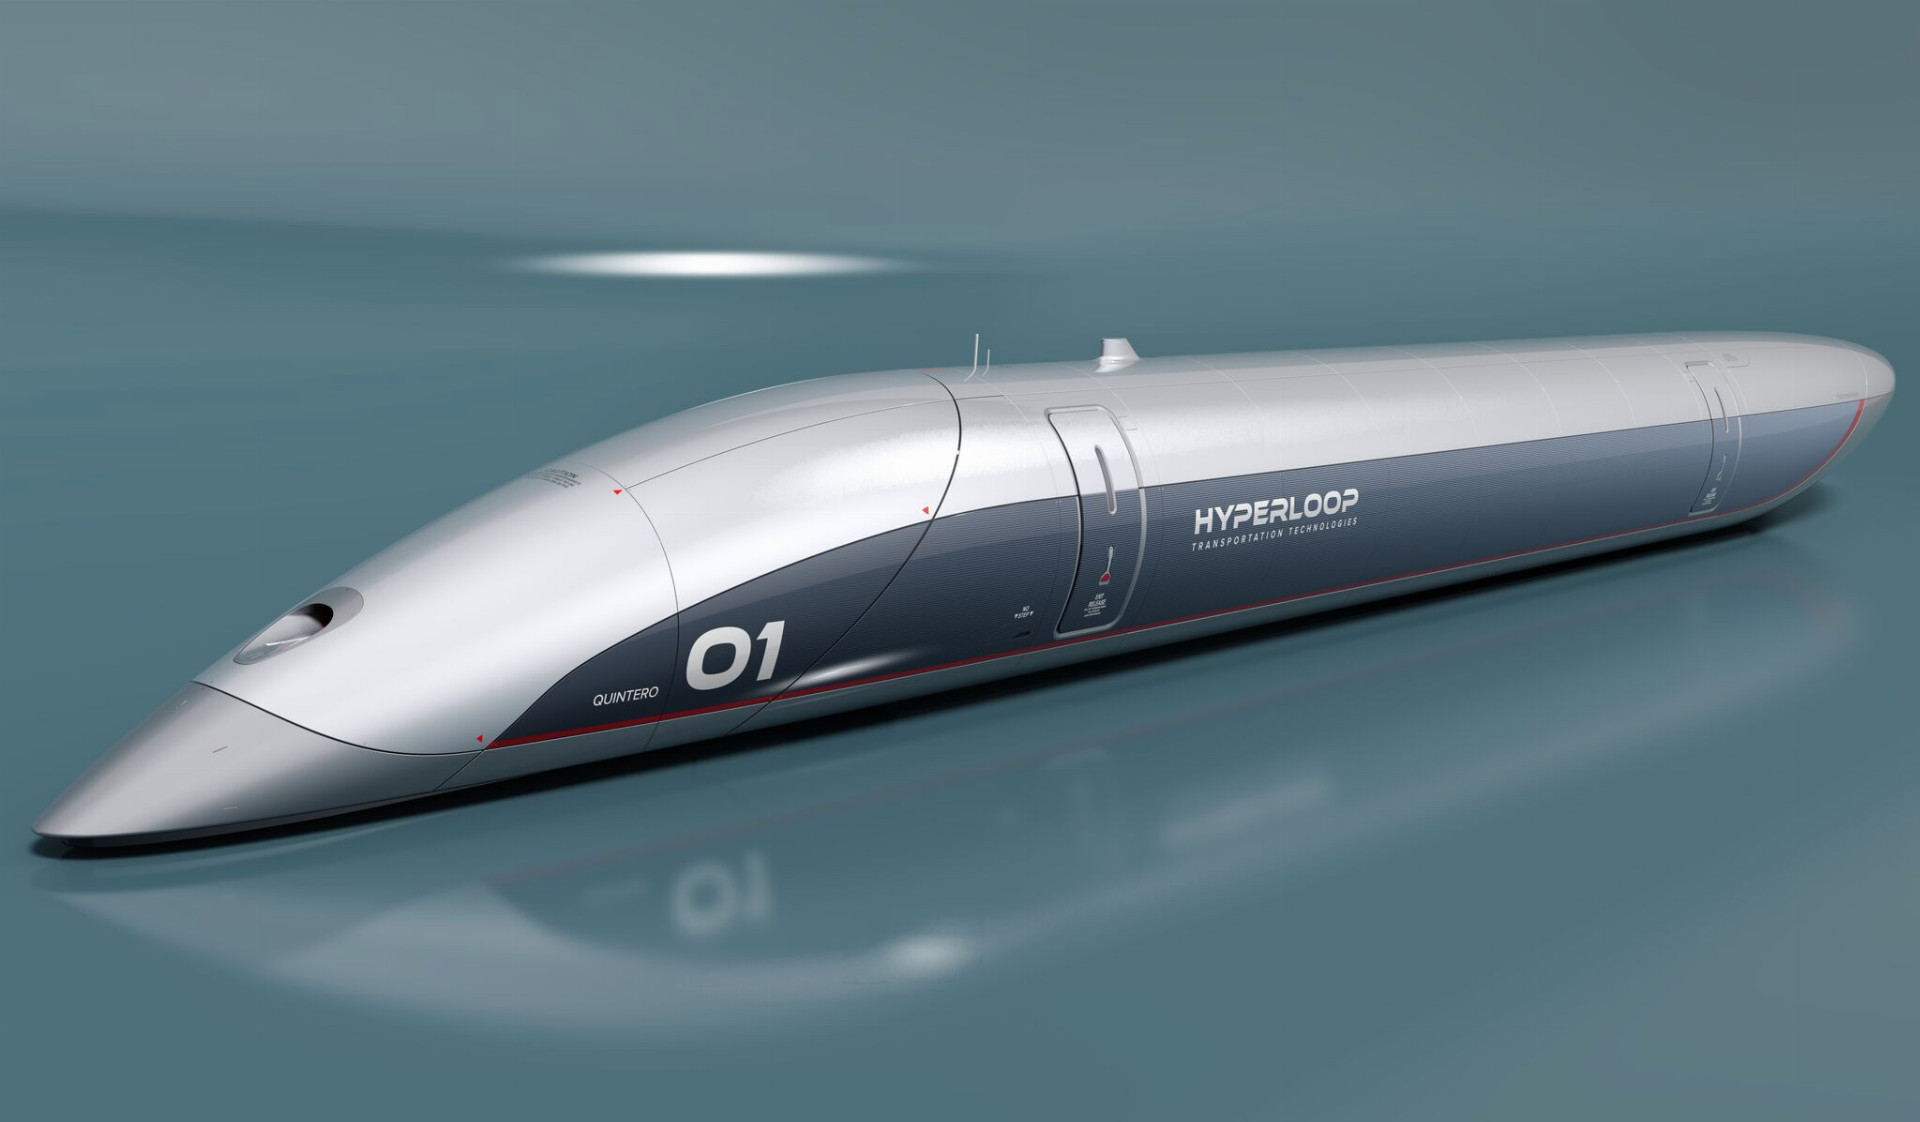 Magnetický rýchlovlak Hyperloop mal spojiť Bratislavu s Viedňou za osem minút. V okolí Bratislavy mala vyrásť aj testovacia trať, tú však nakoniec získali Francúzi.